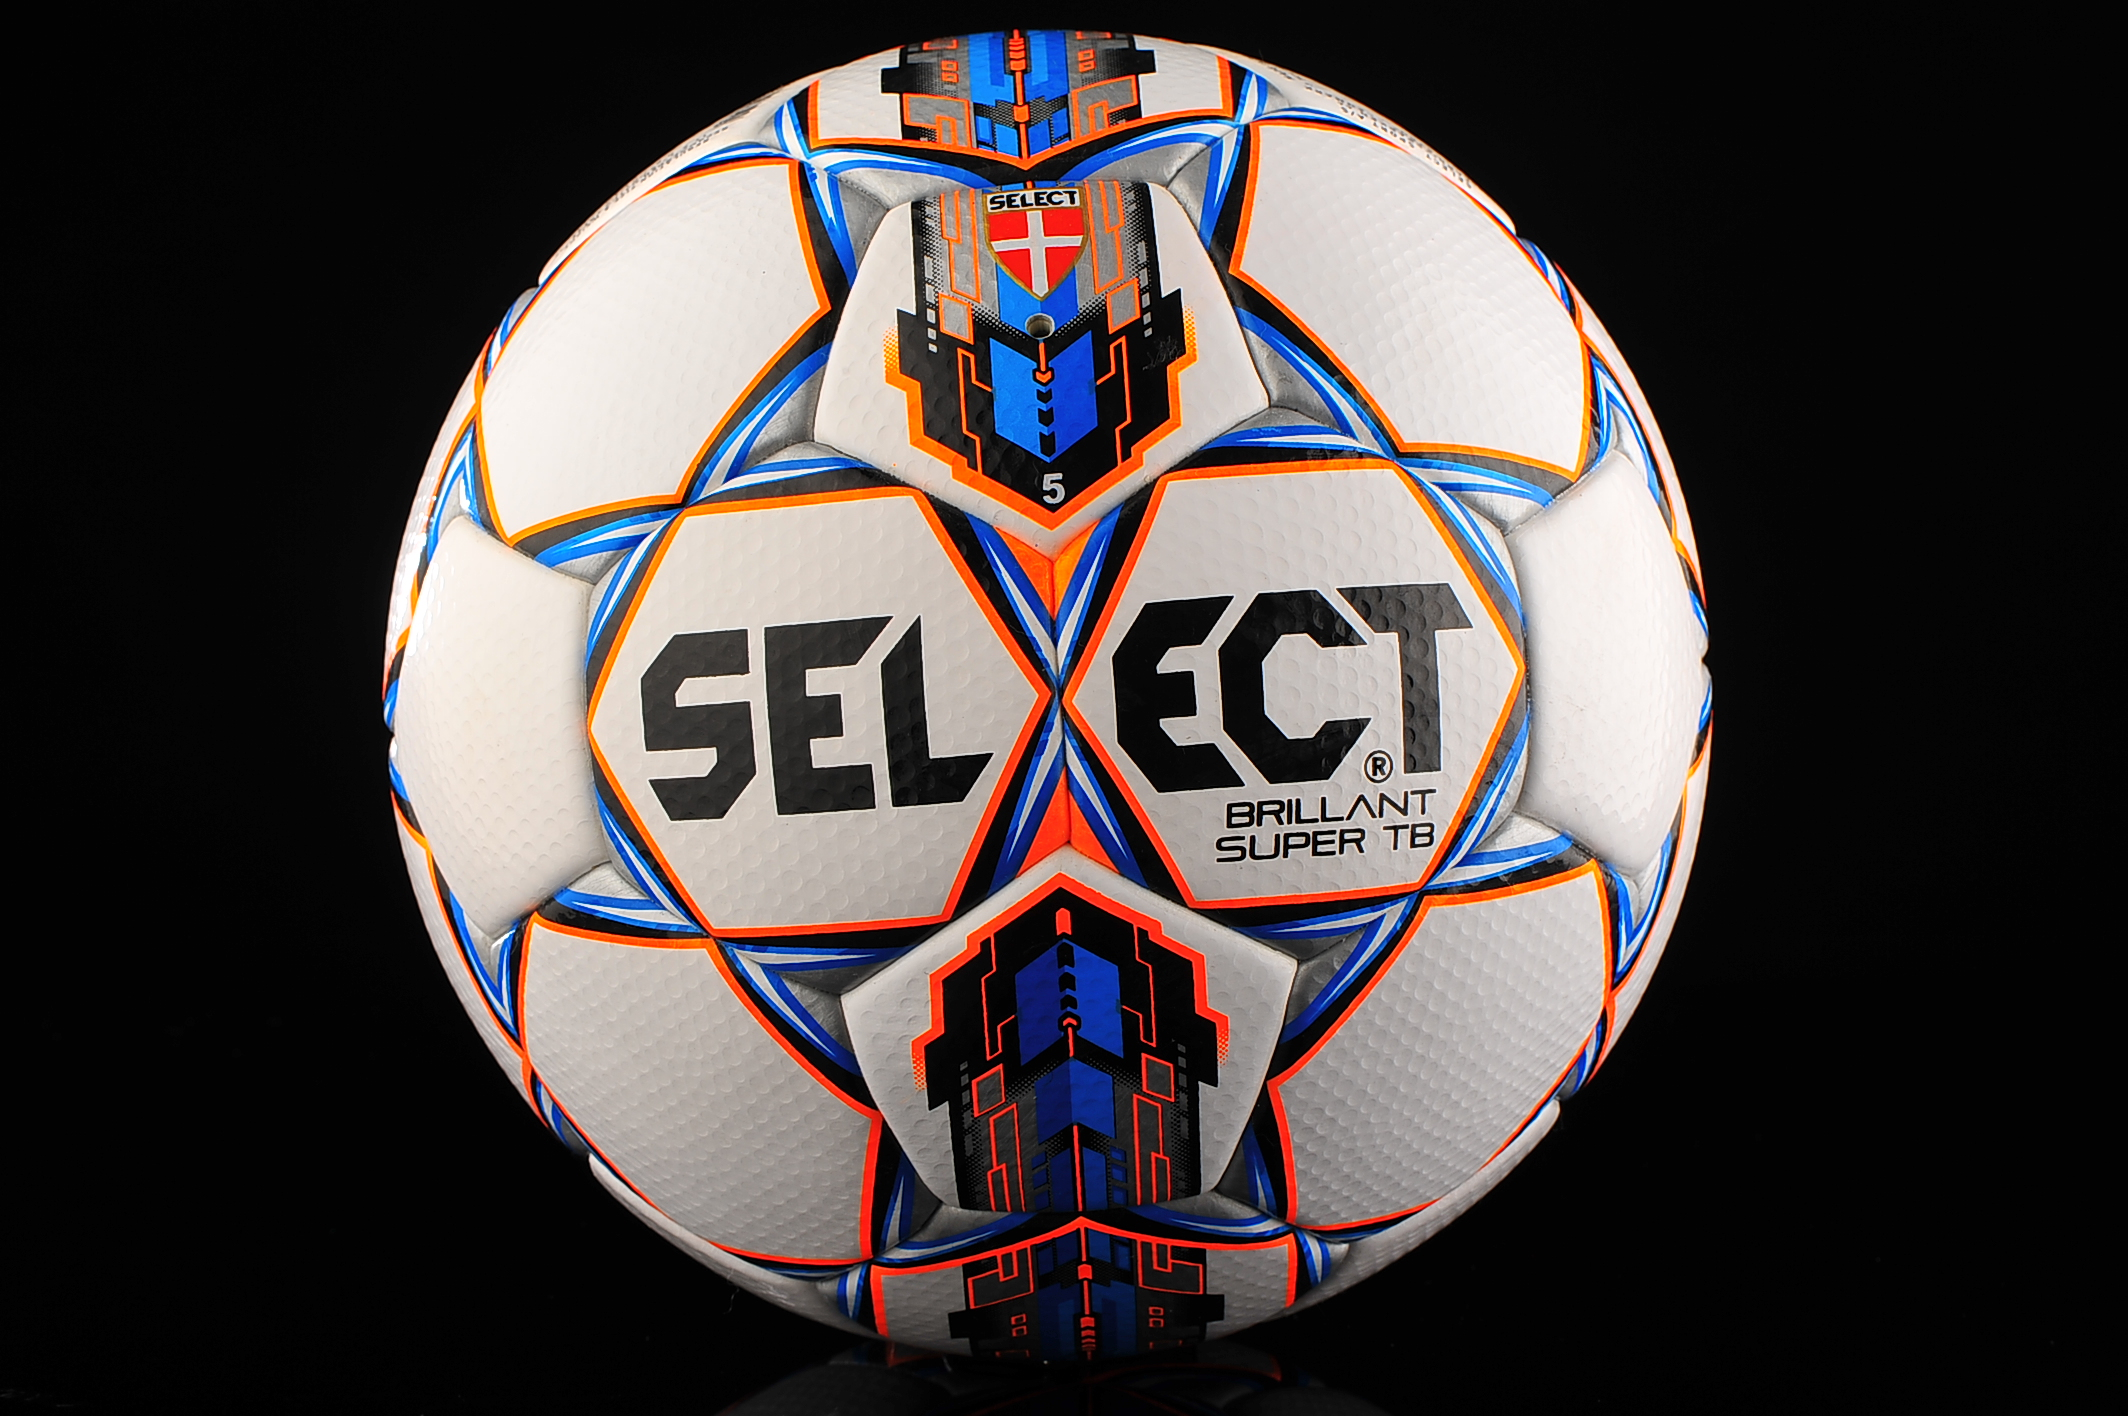 Селект. Селект бриллиант супер. Select Futsal super TB. Select Ball. Футбольный мяч select белый голубой.